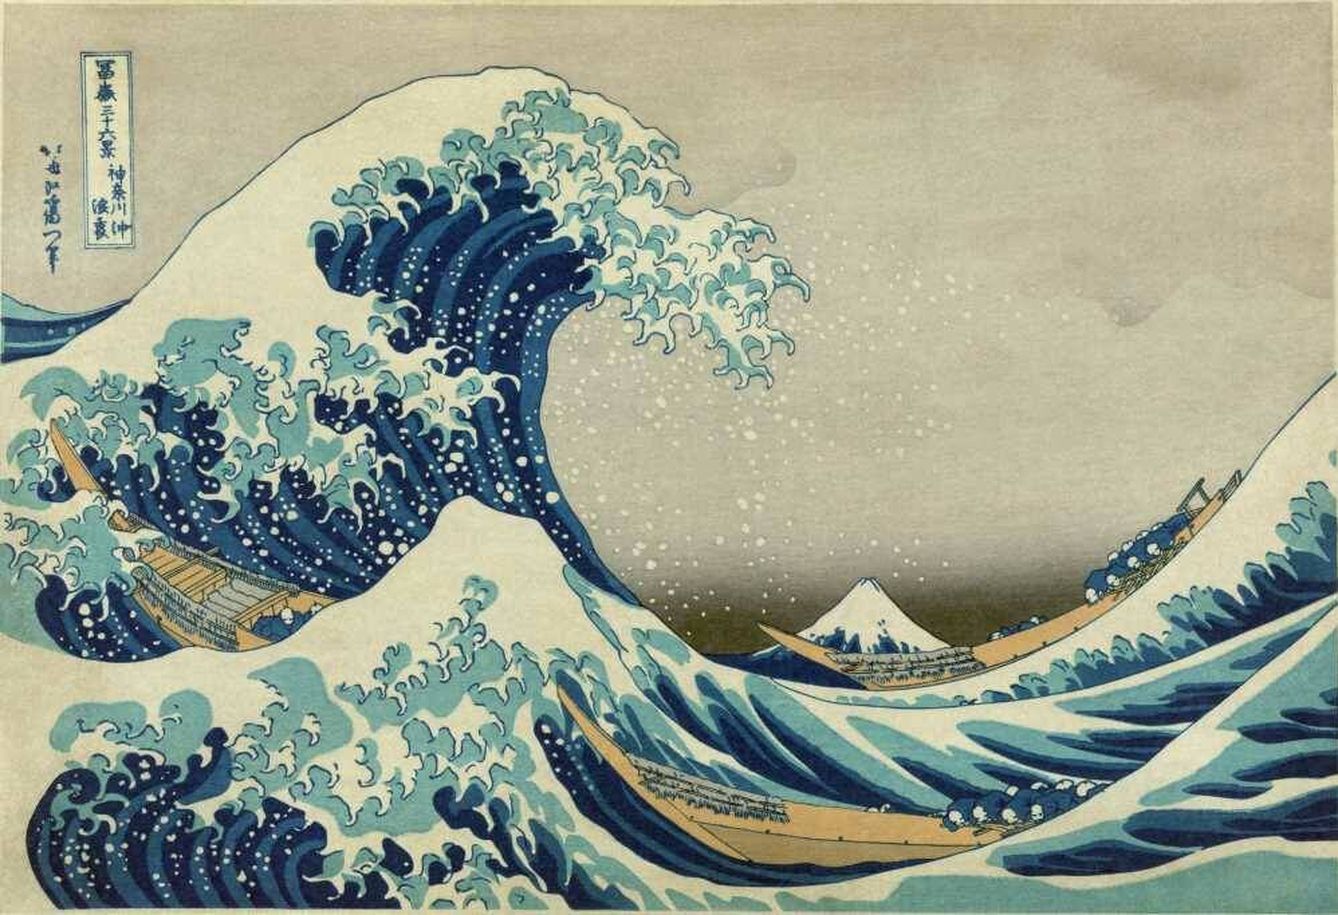 La gran ola de Kanagawa de Treinta y seis vistas del Monte Fuji. Katsushika Hokusai. 1831-33. Metropolitan Museum of Art. New York.